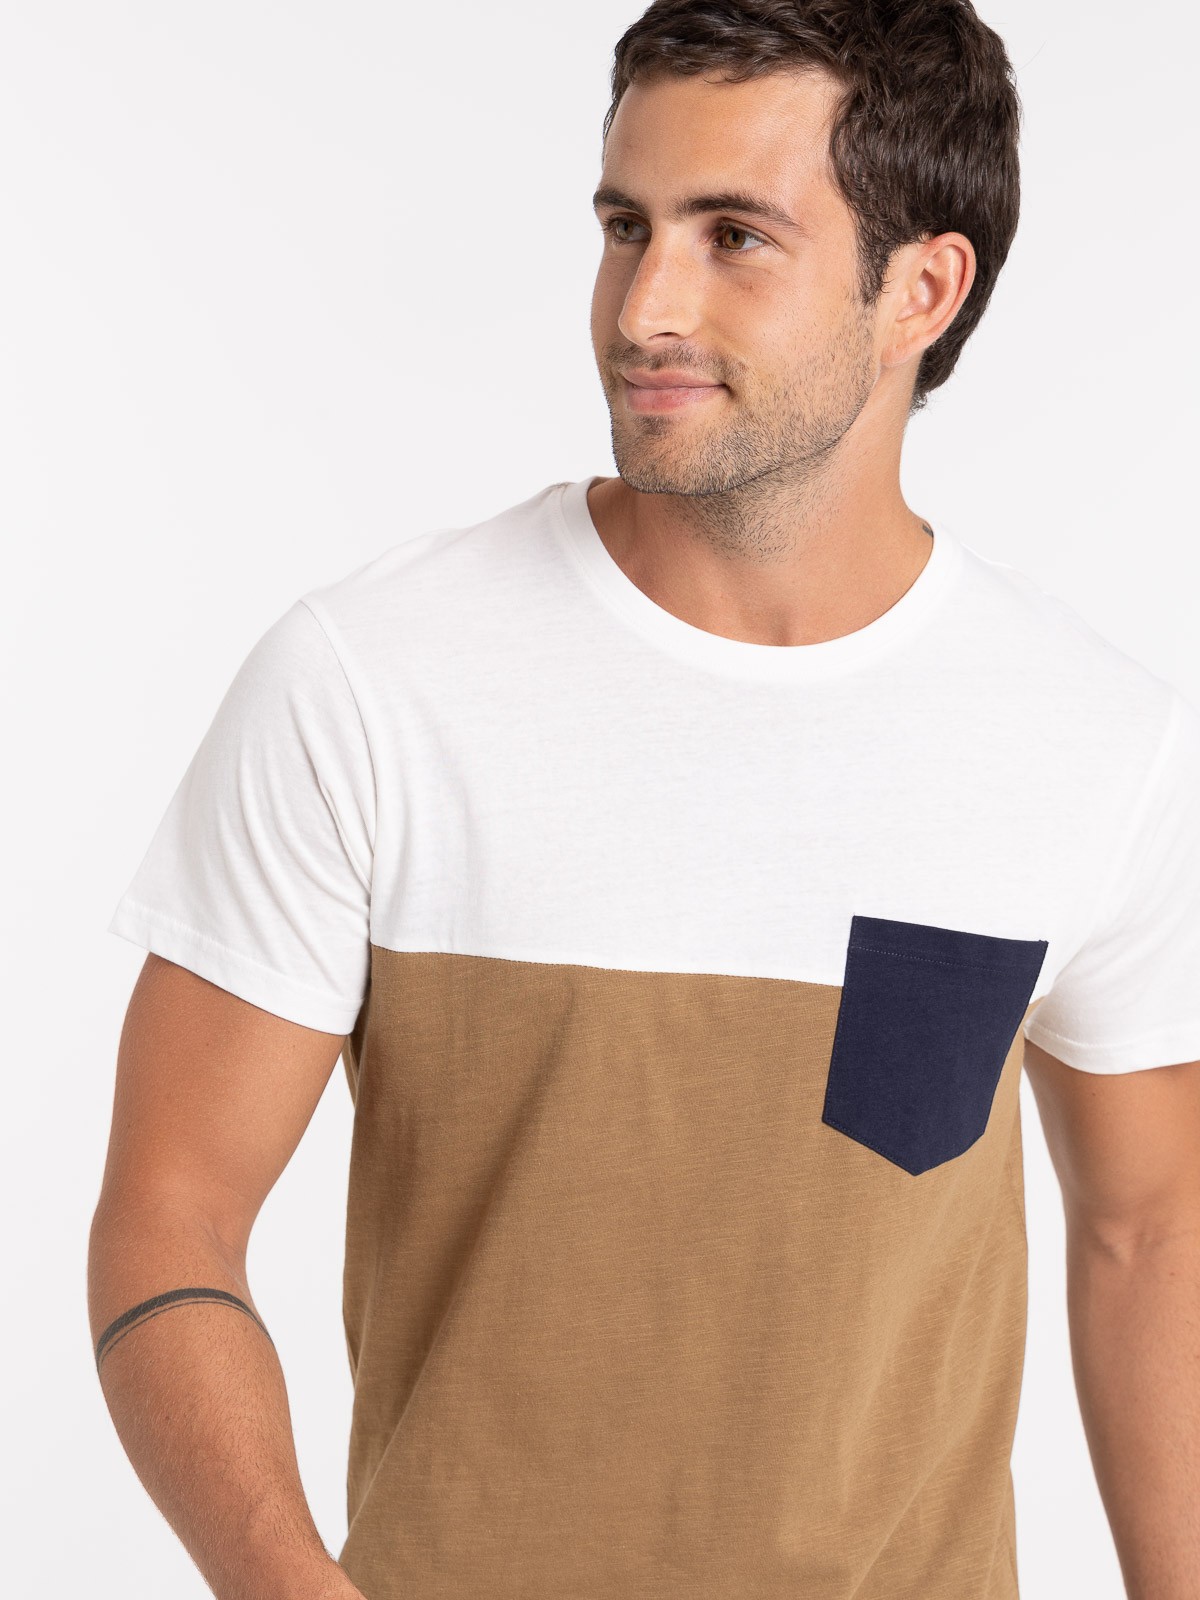 T-shirt poche poitrine homme - DistriCenter